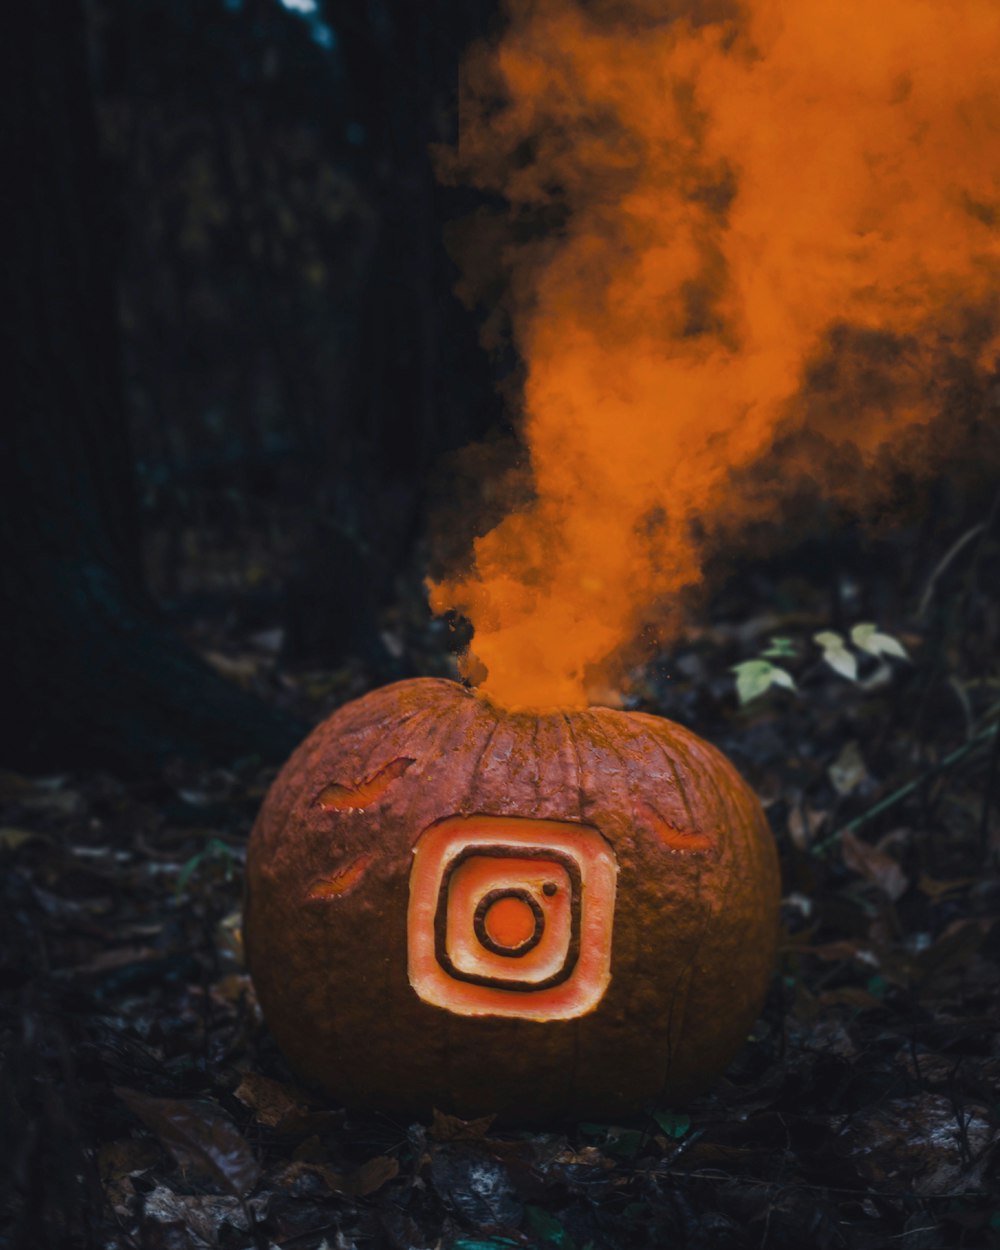 خلفيات ♥️  Instagram profile picture ideas, Best profile